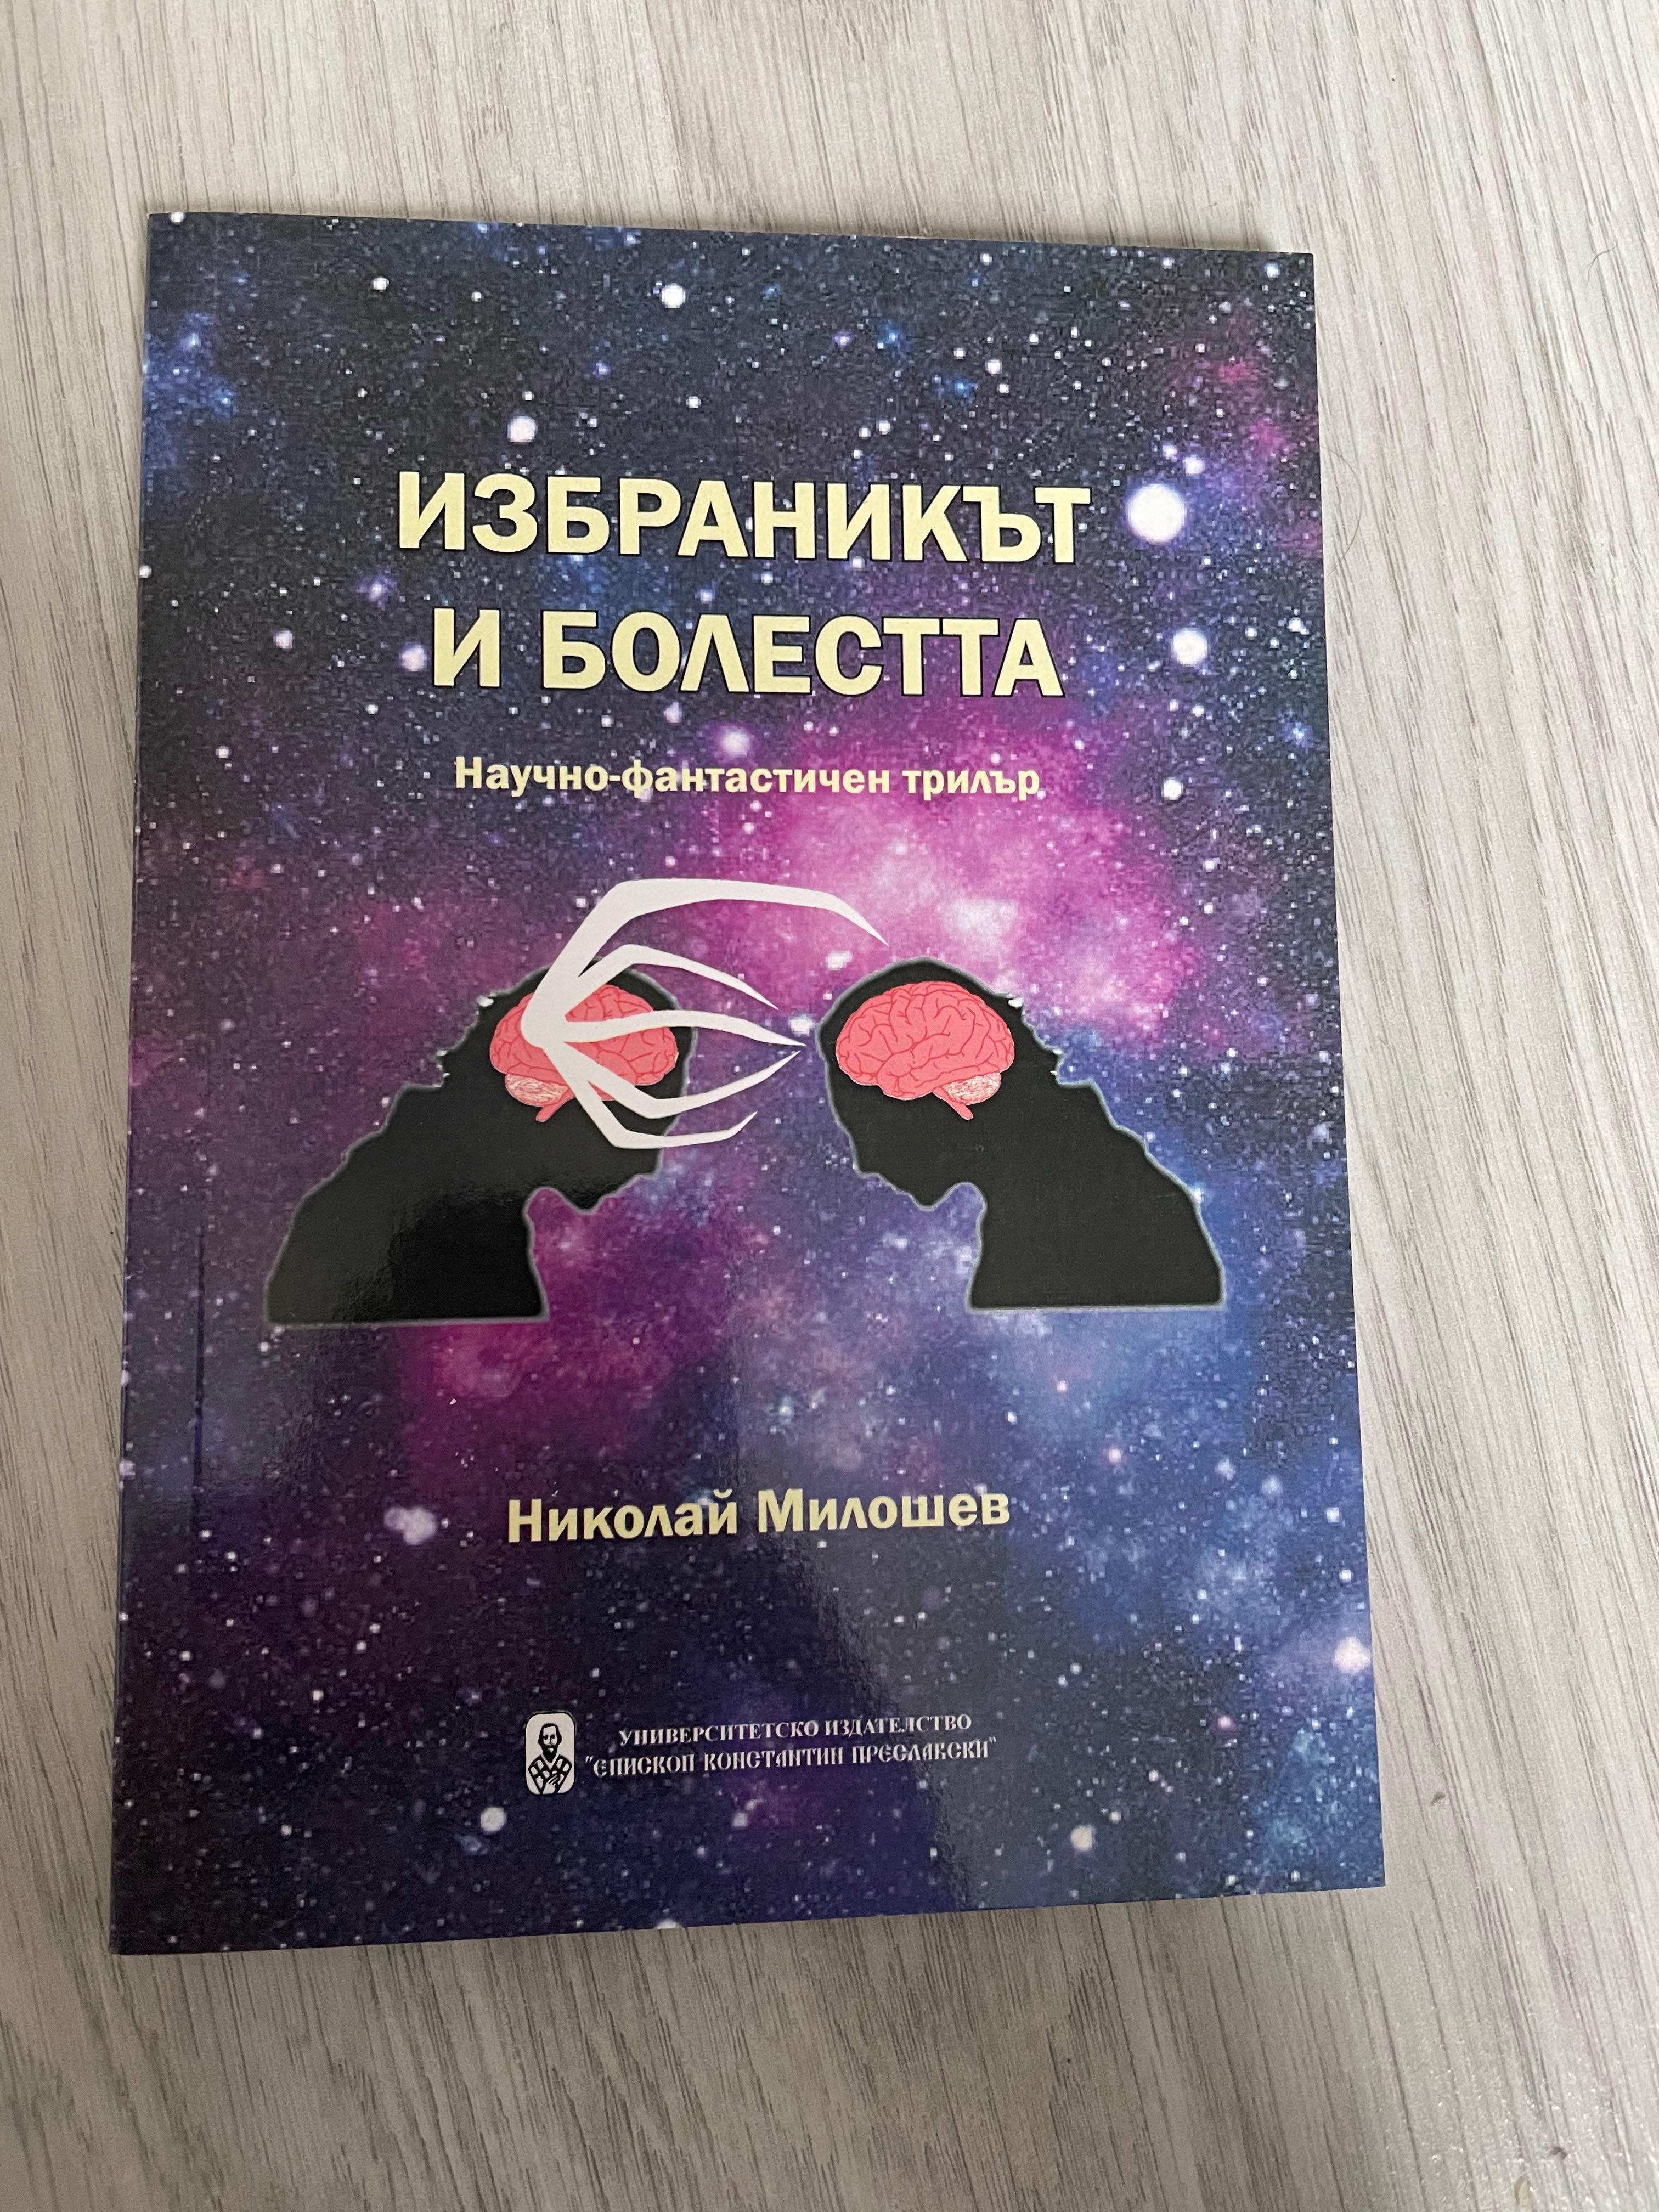 Книги на български автор